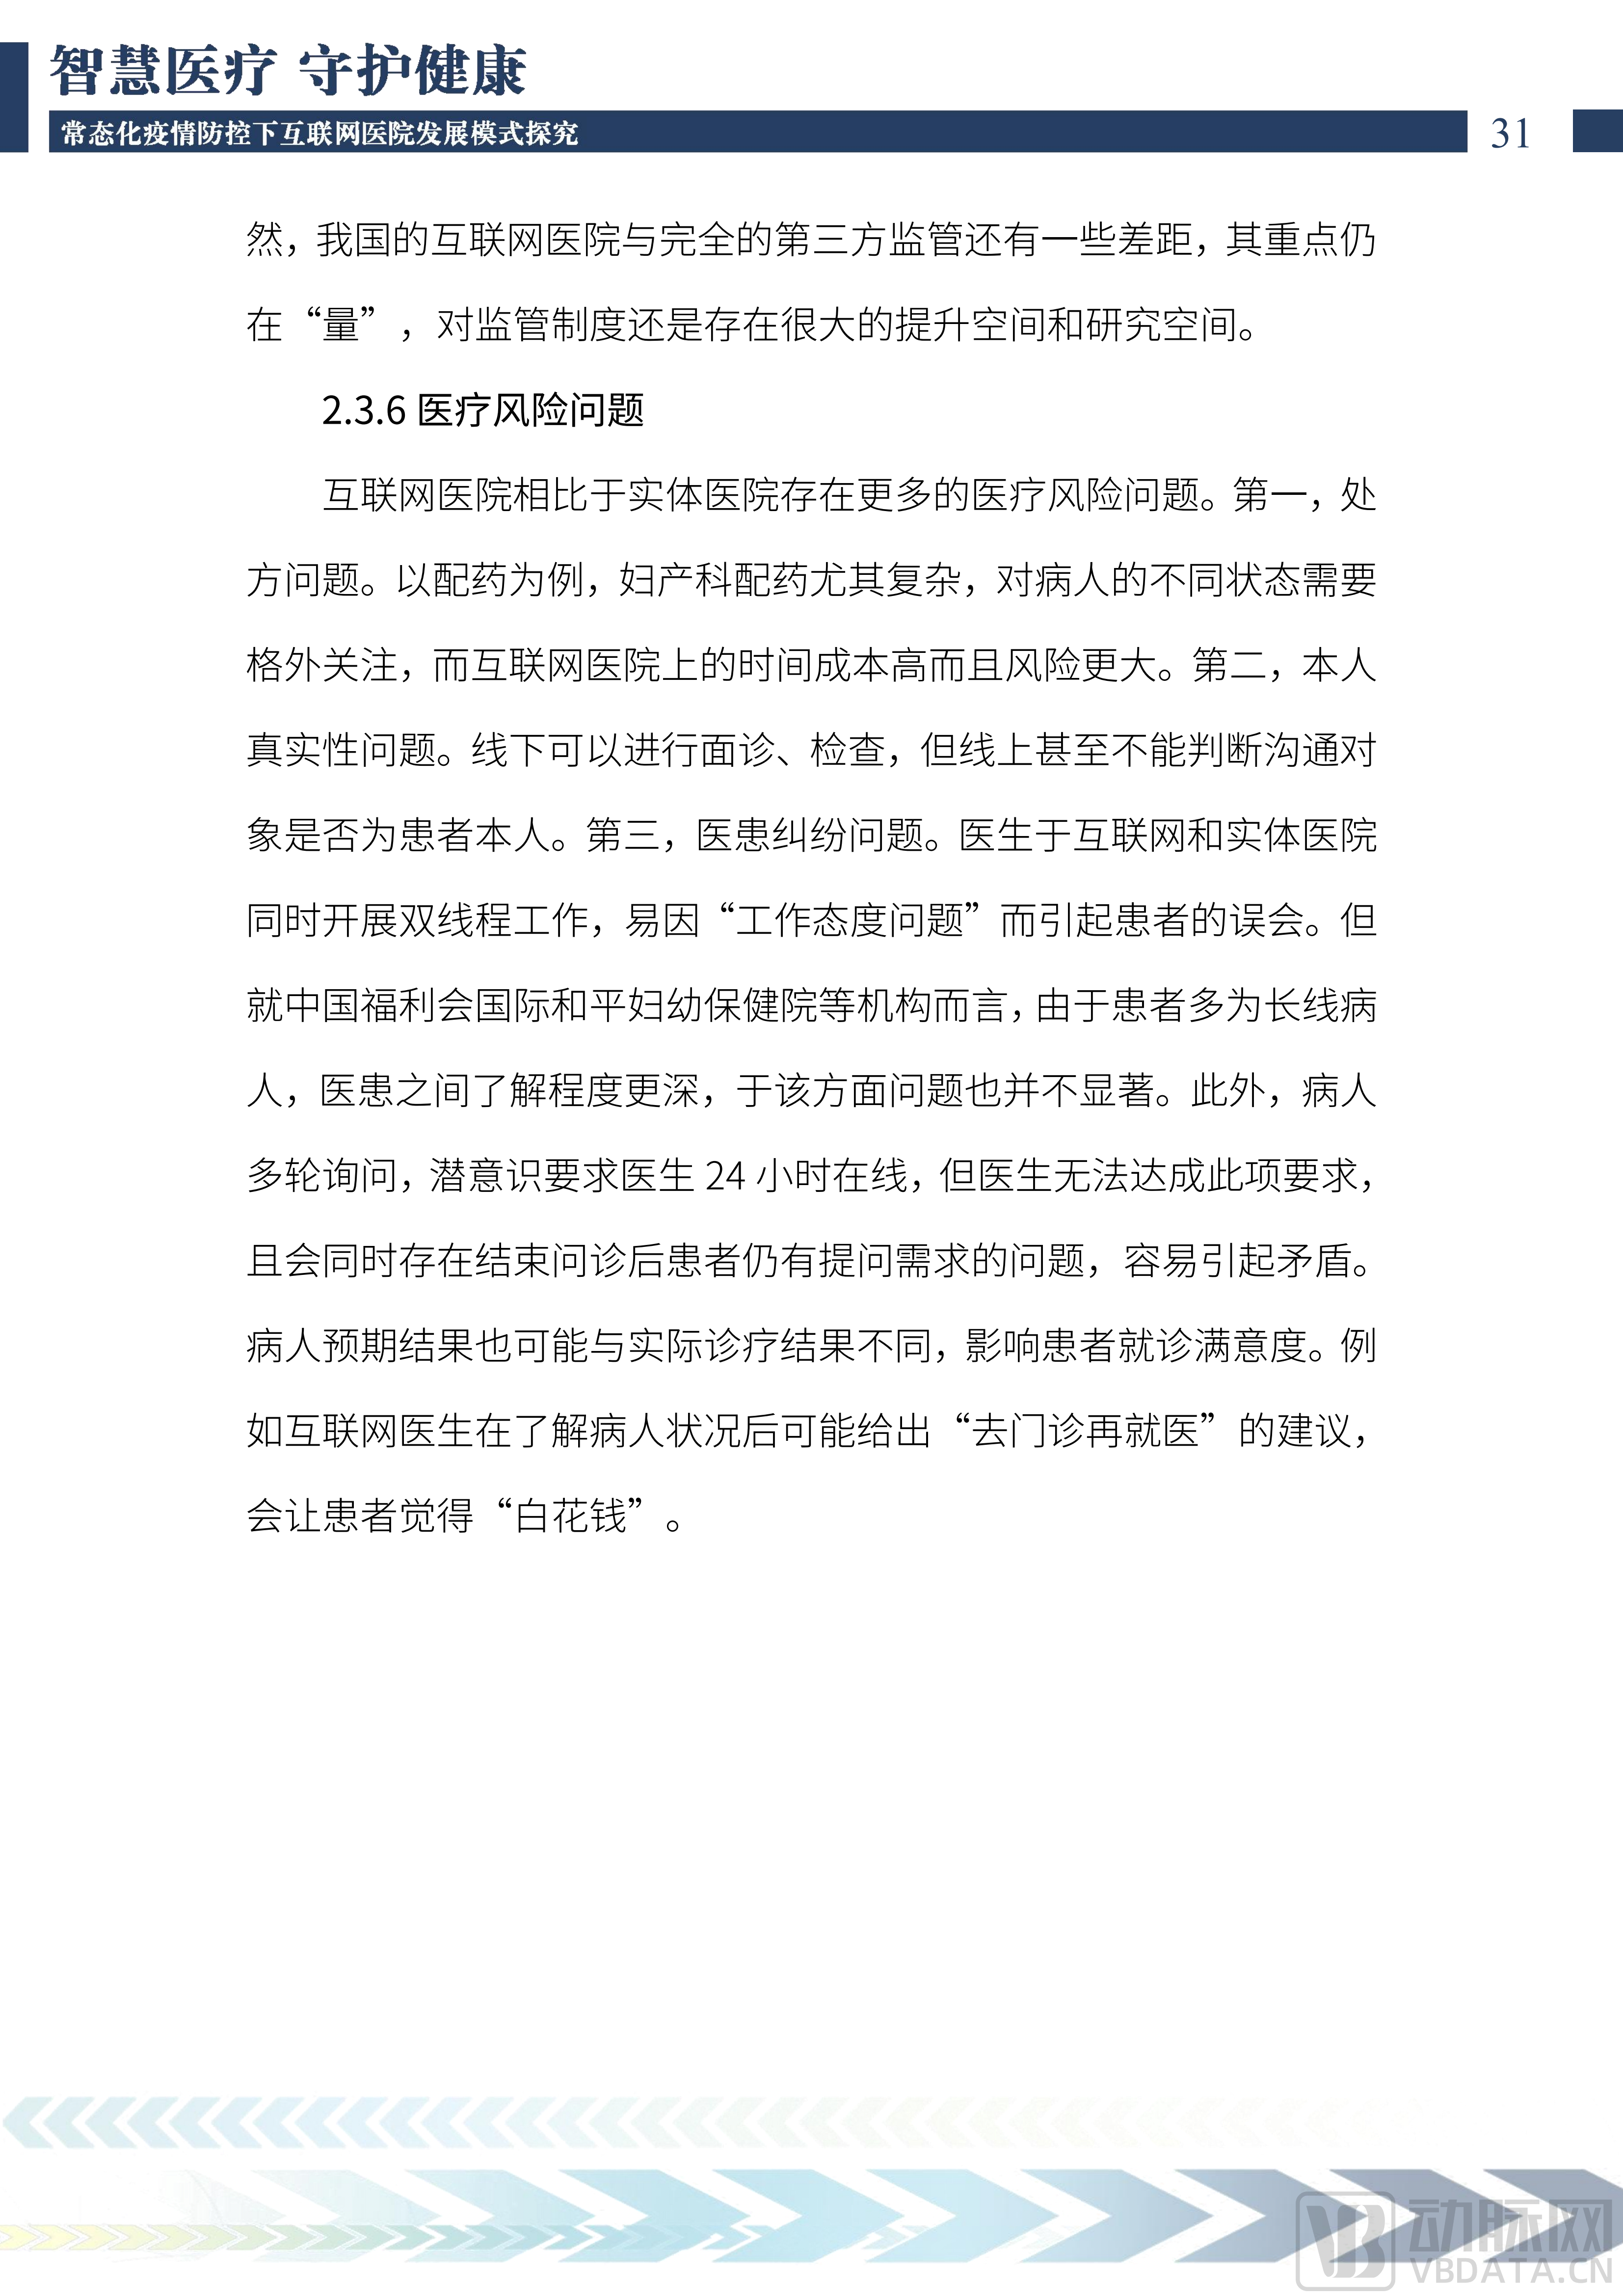 2022中国互联网医院发展调研报告(1)_32.png